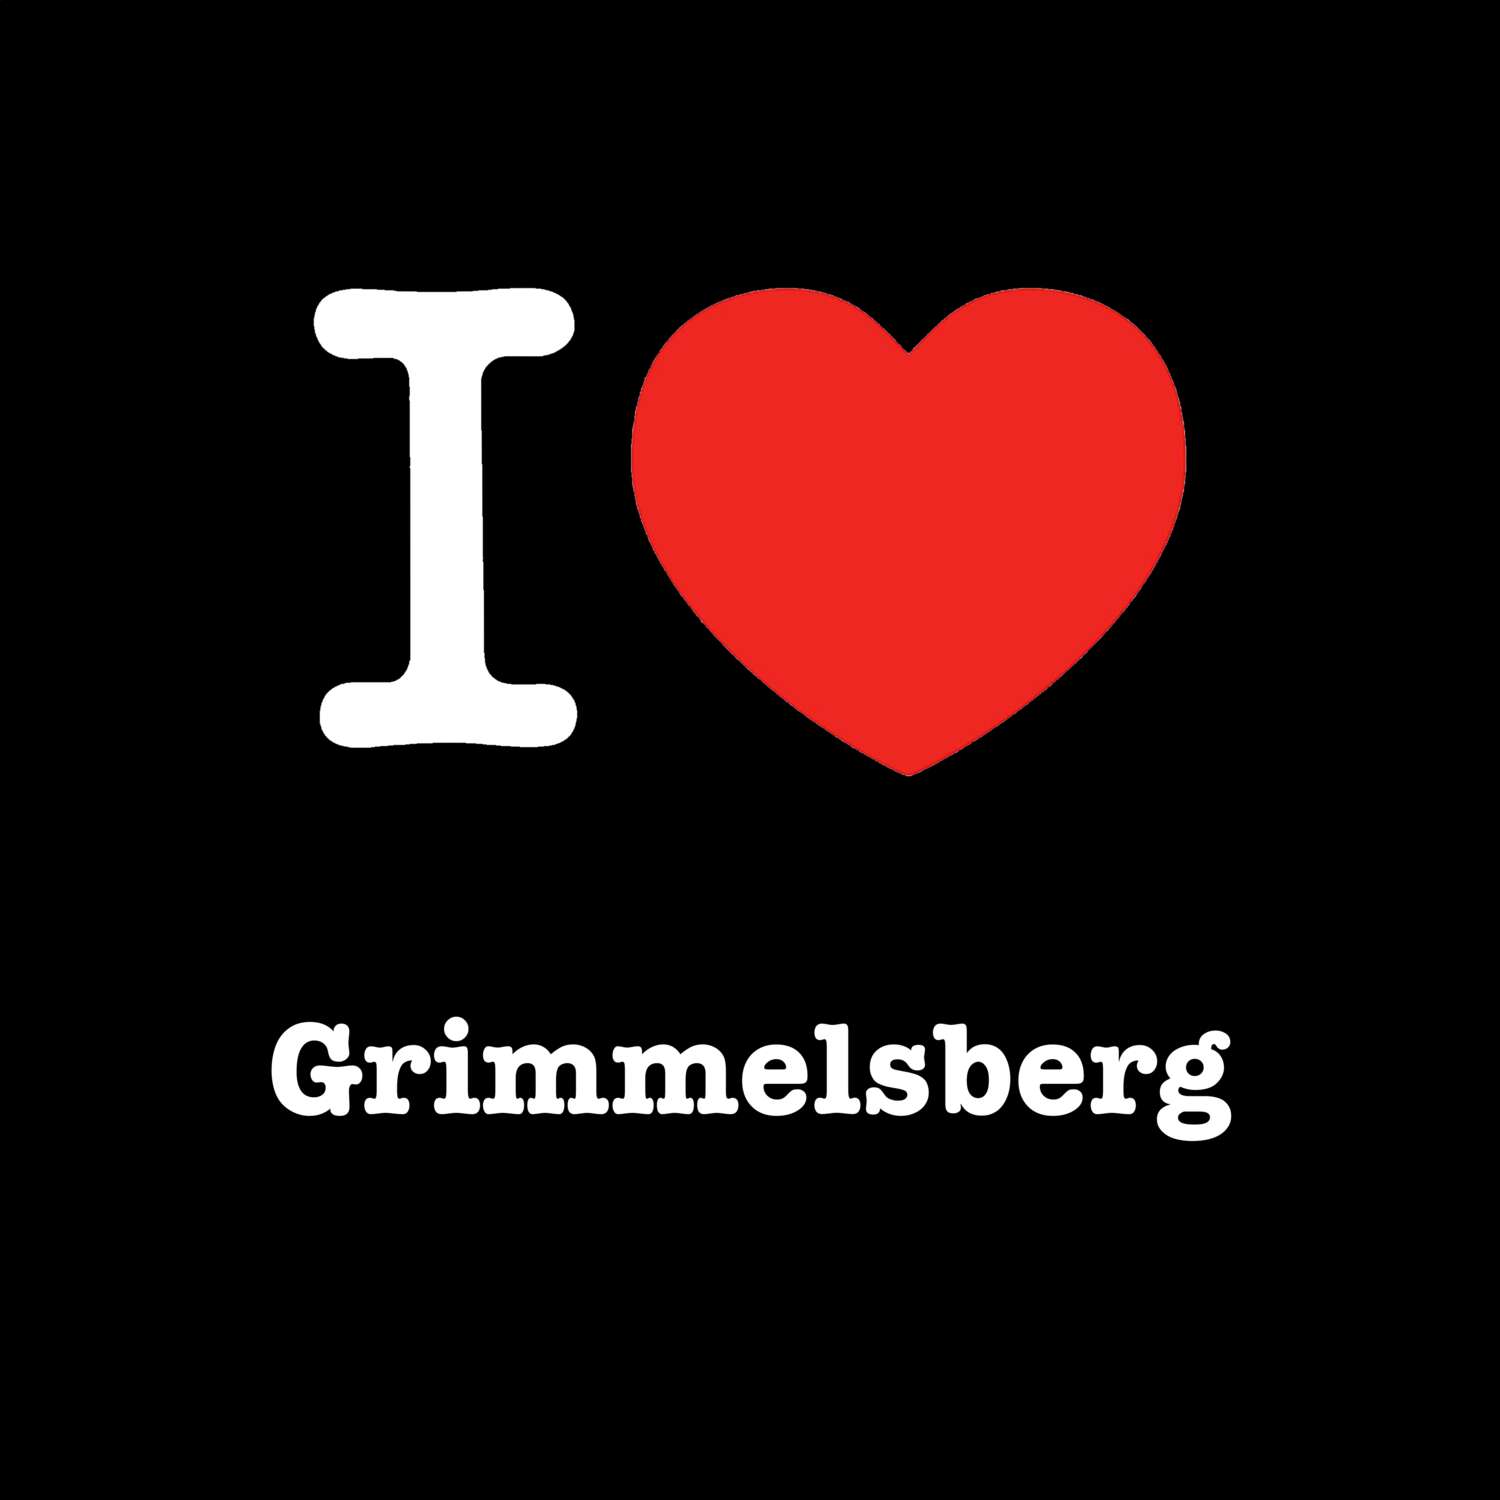 Grimmelsberg T-Shirt »I love«